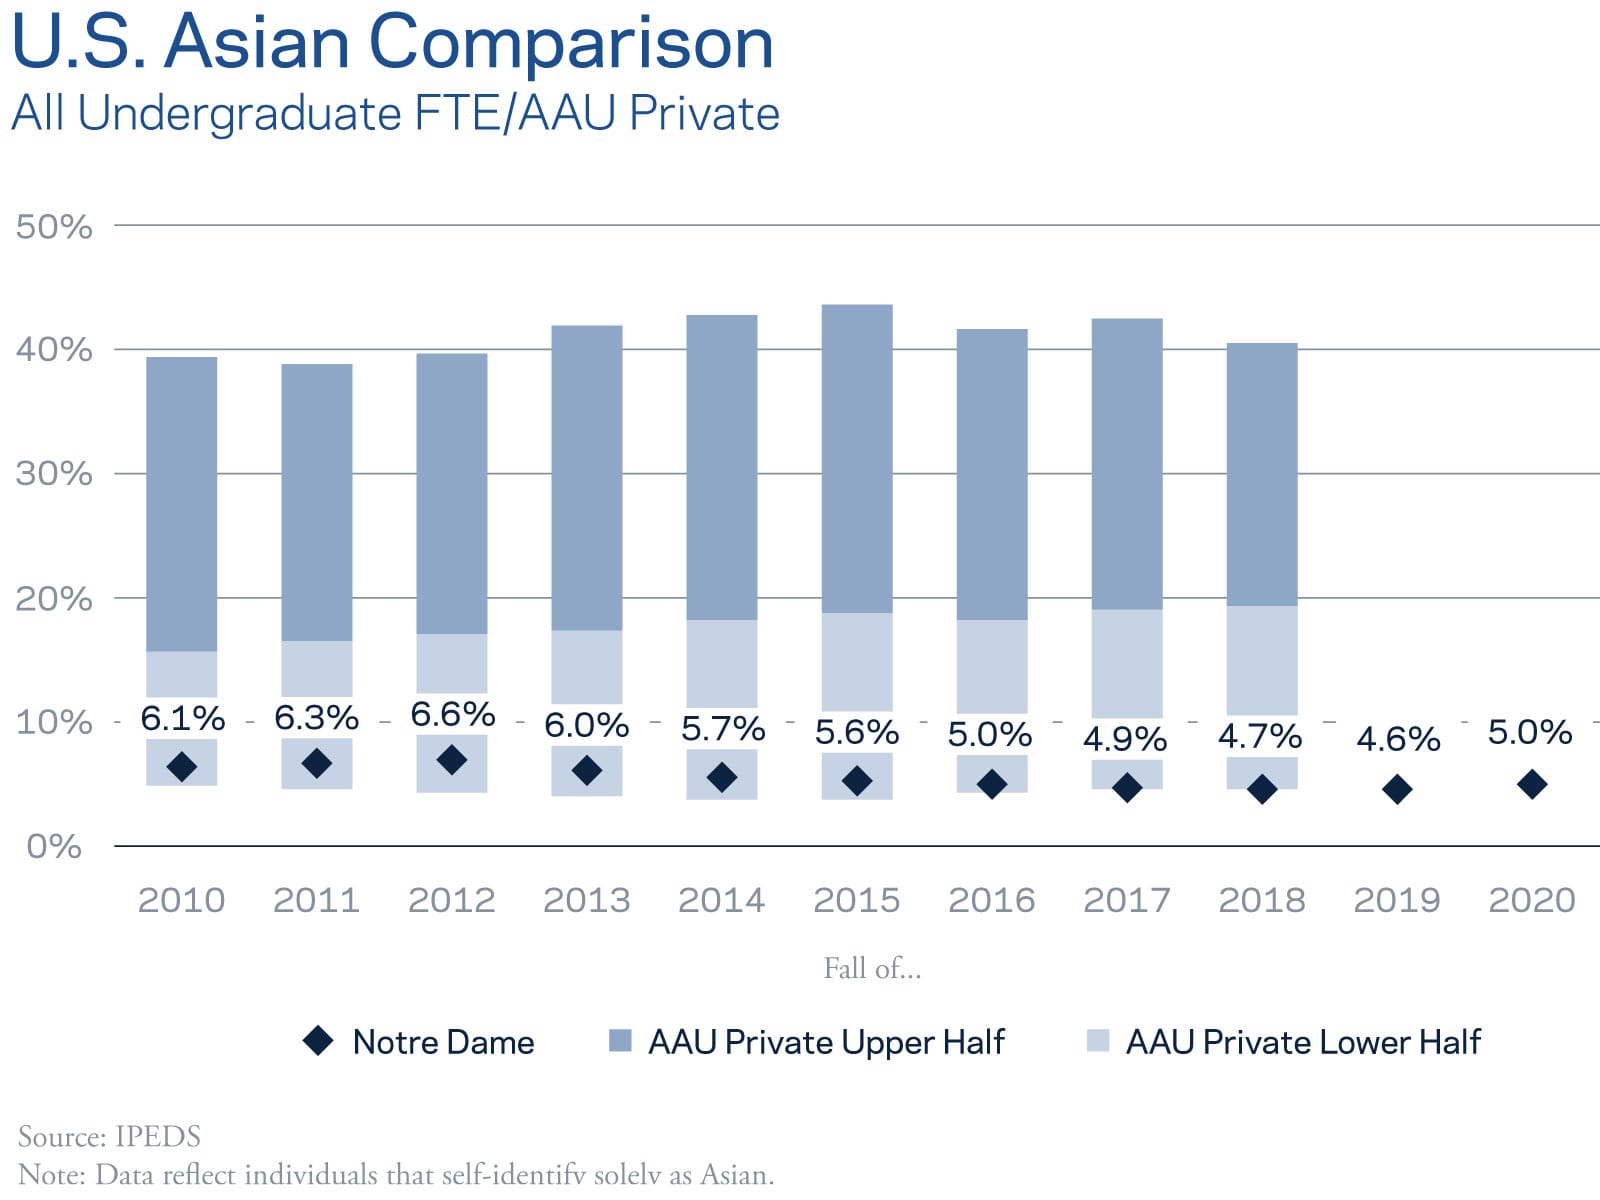 U.S. Asian Comparison - All Undergraduate FTE/AAU Private